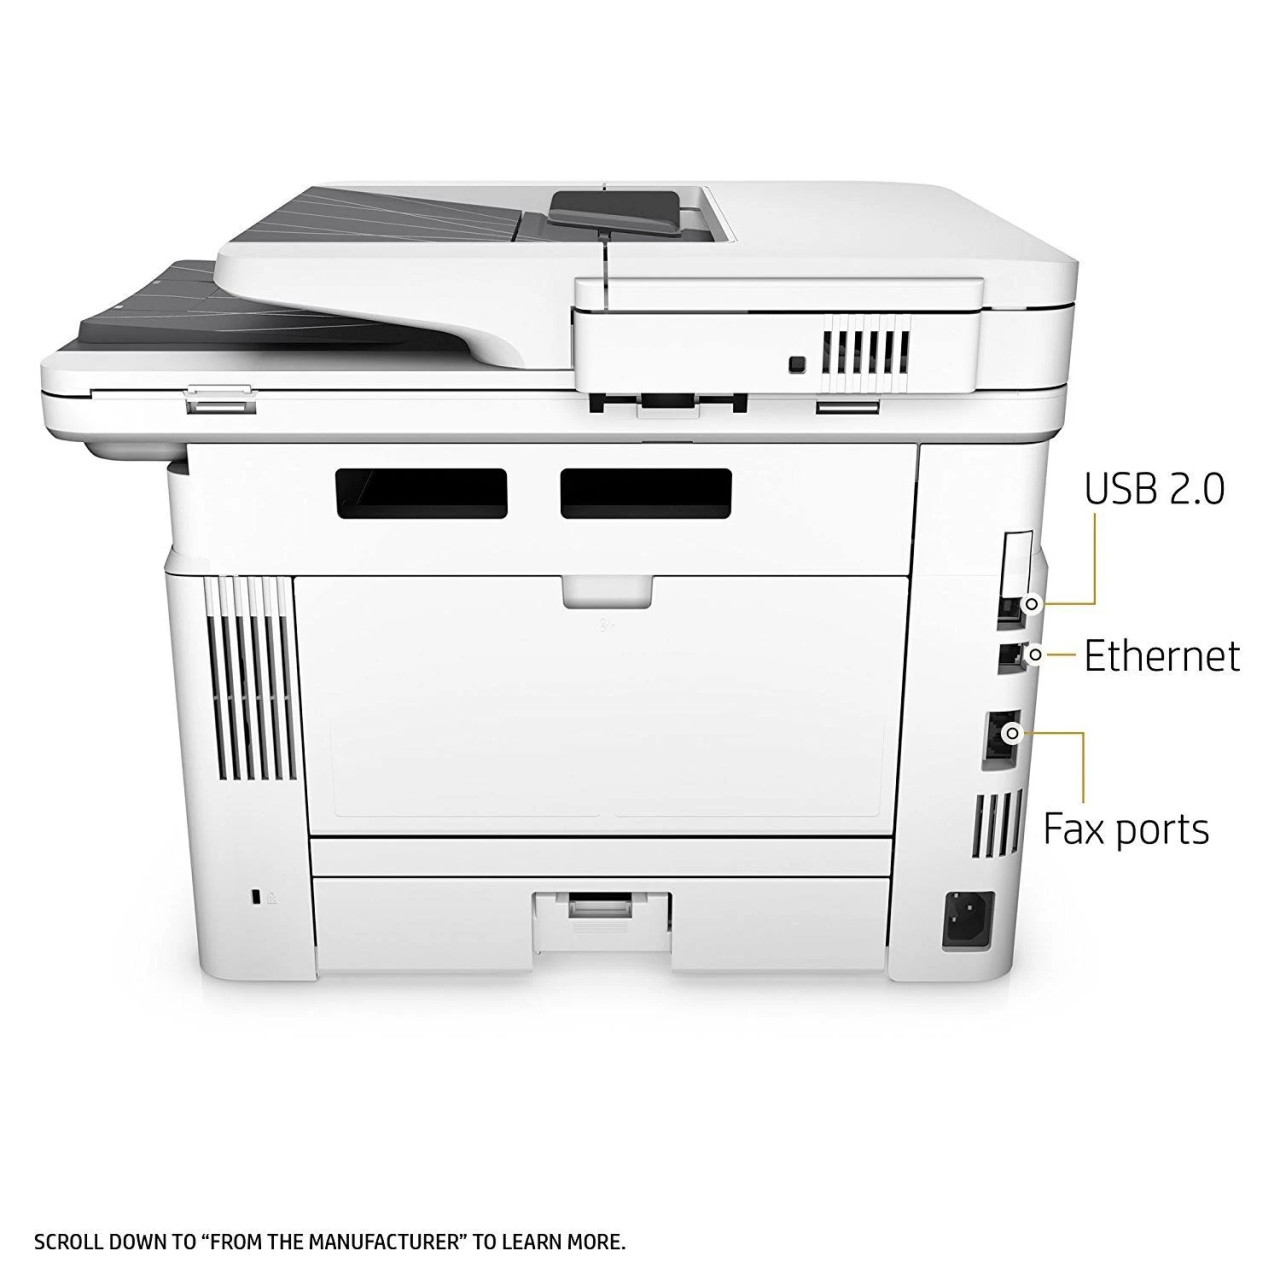 studieafgift internettet Konkret HP LaserJet Pro MFP M426fdn Printer - Refurished Buy Now! Includes Free  starter toner - PrinterStop